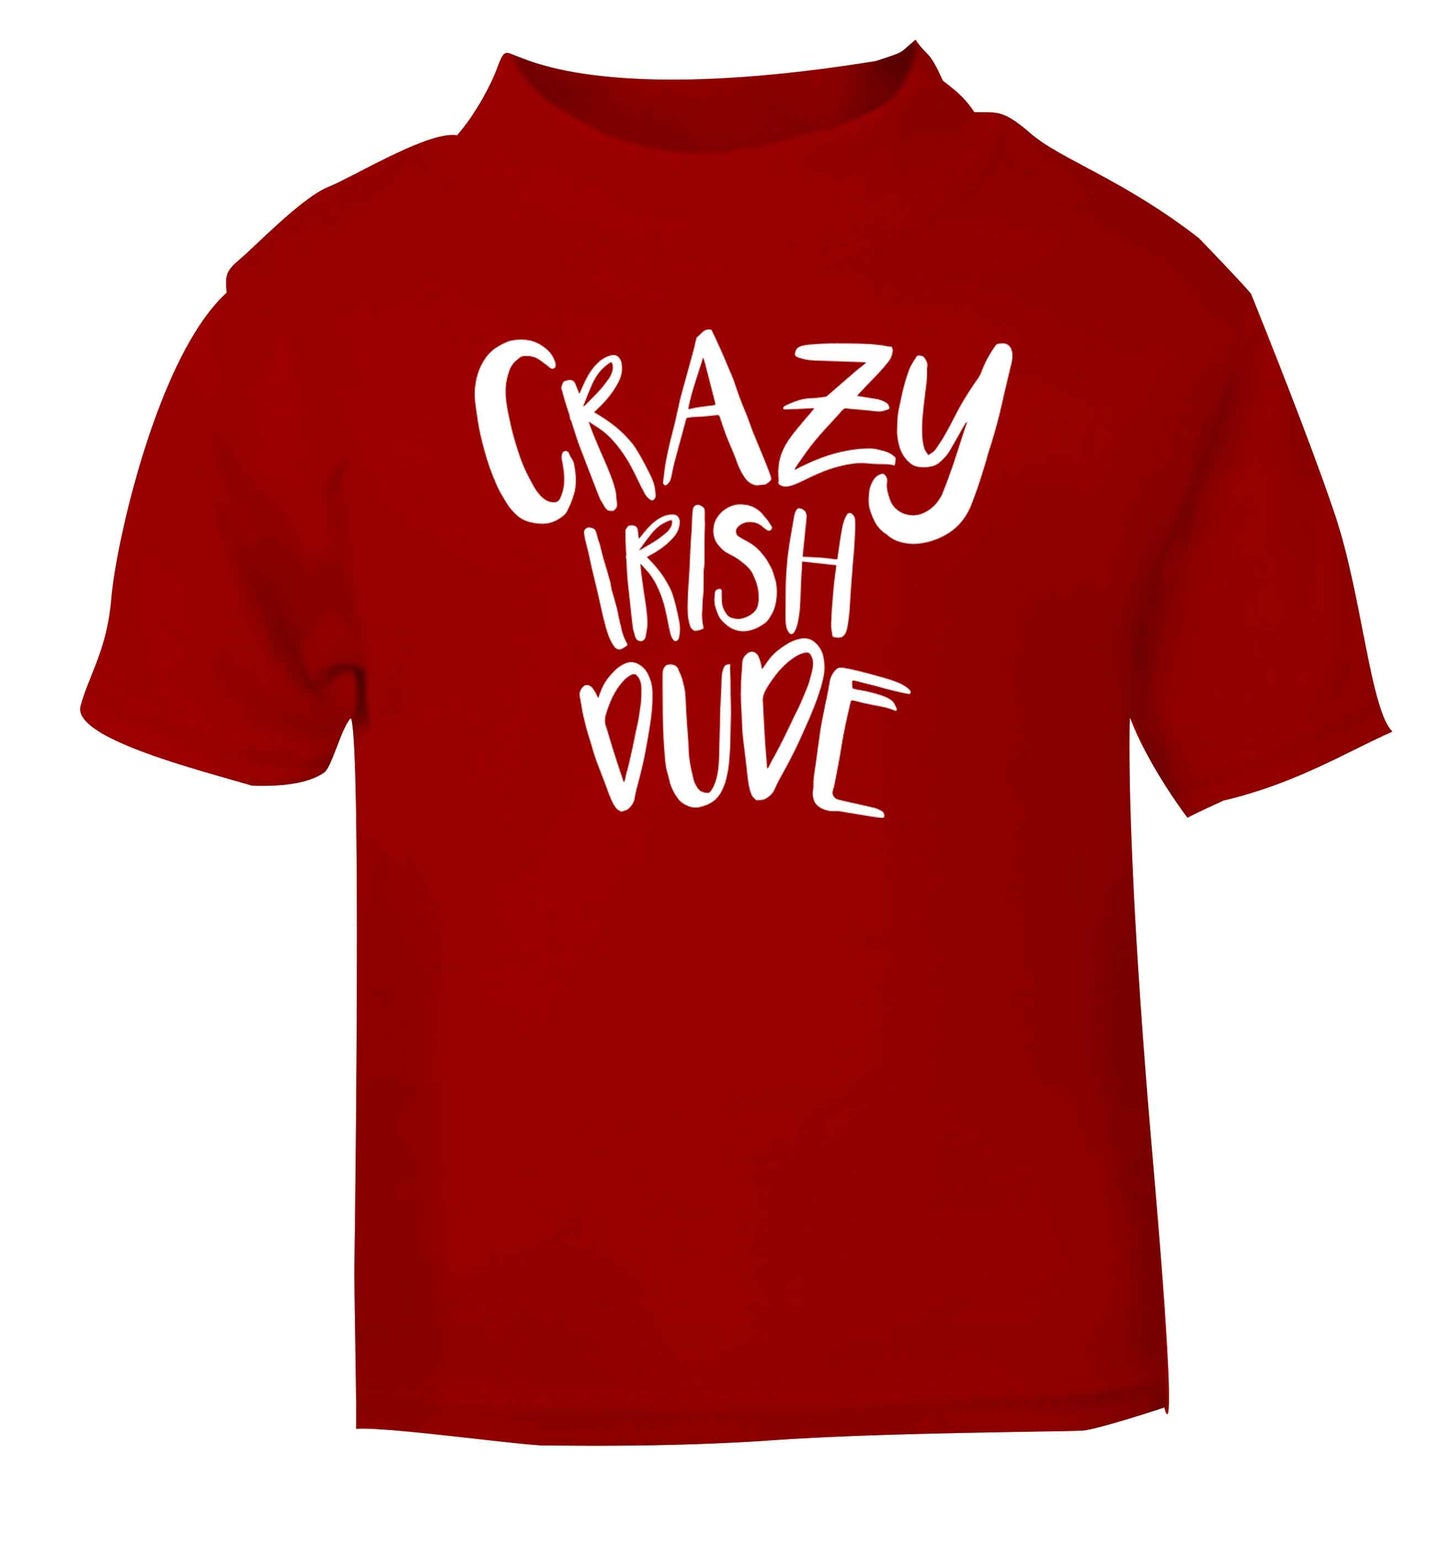 Crazy Irish dude red baby toddler Tshirt 2 Years